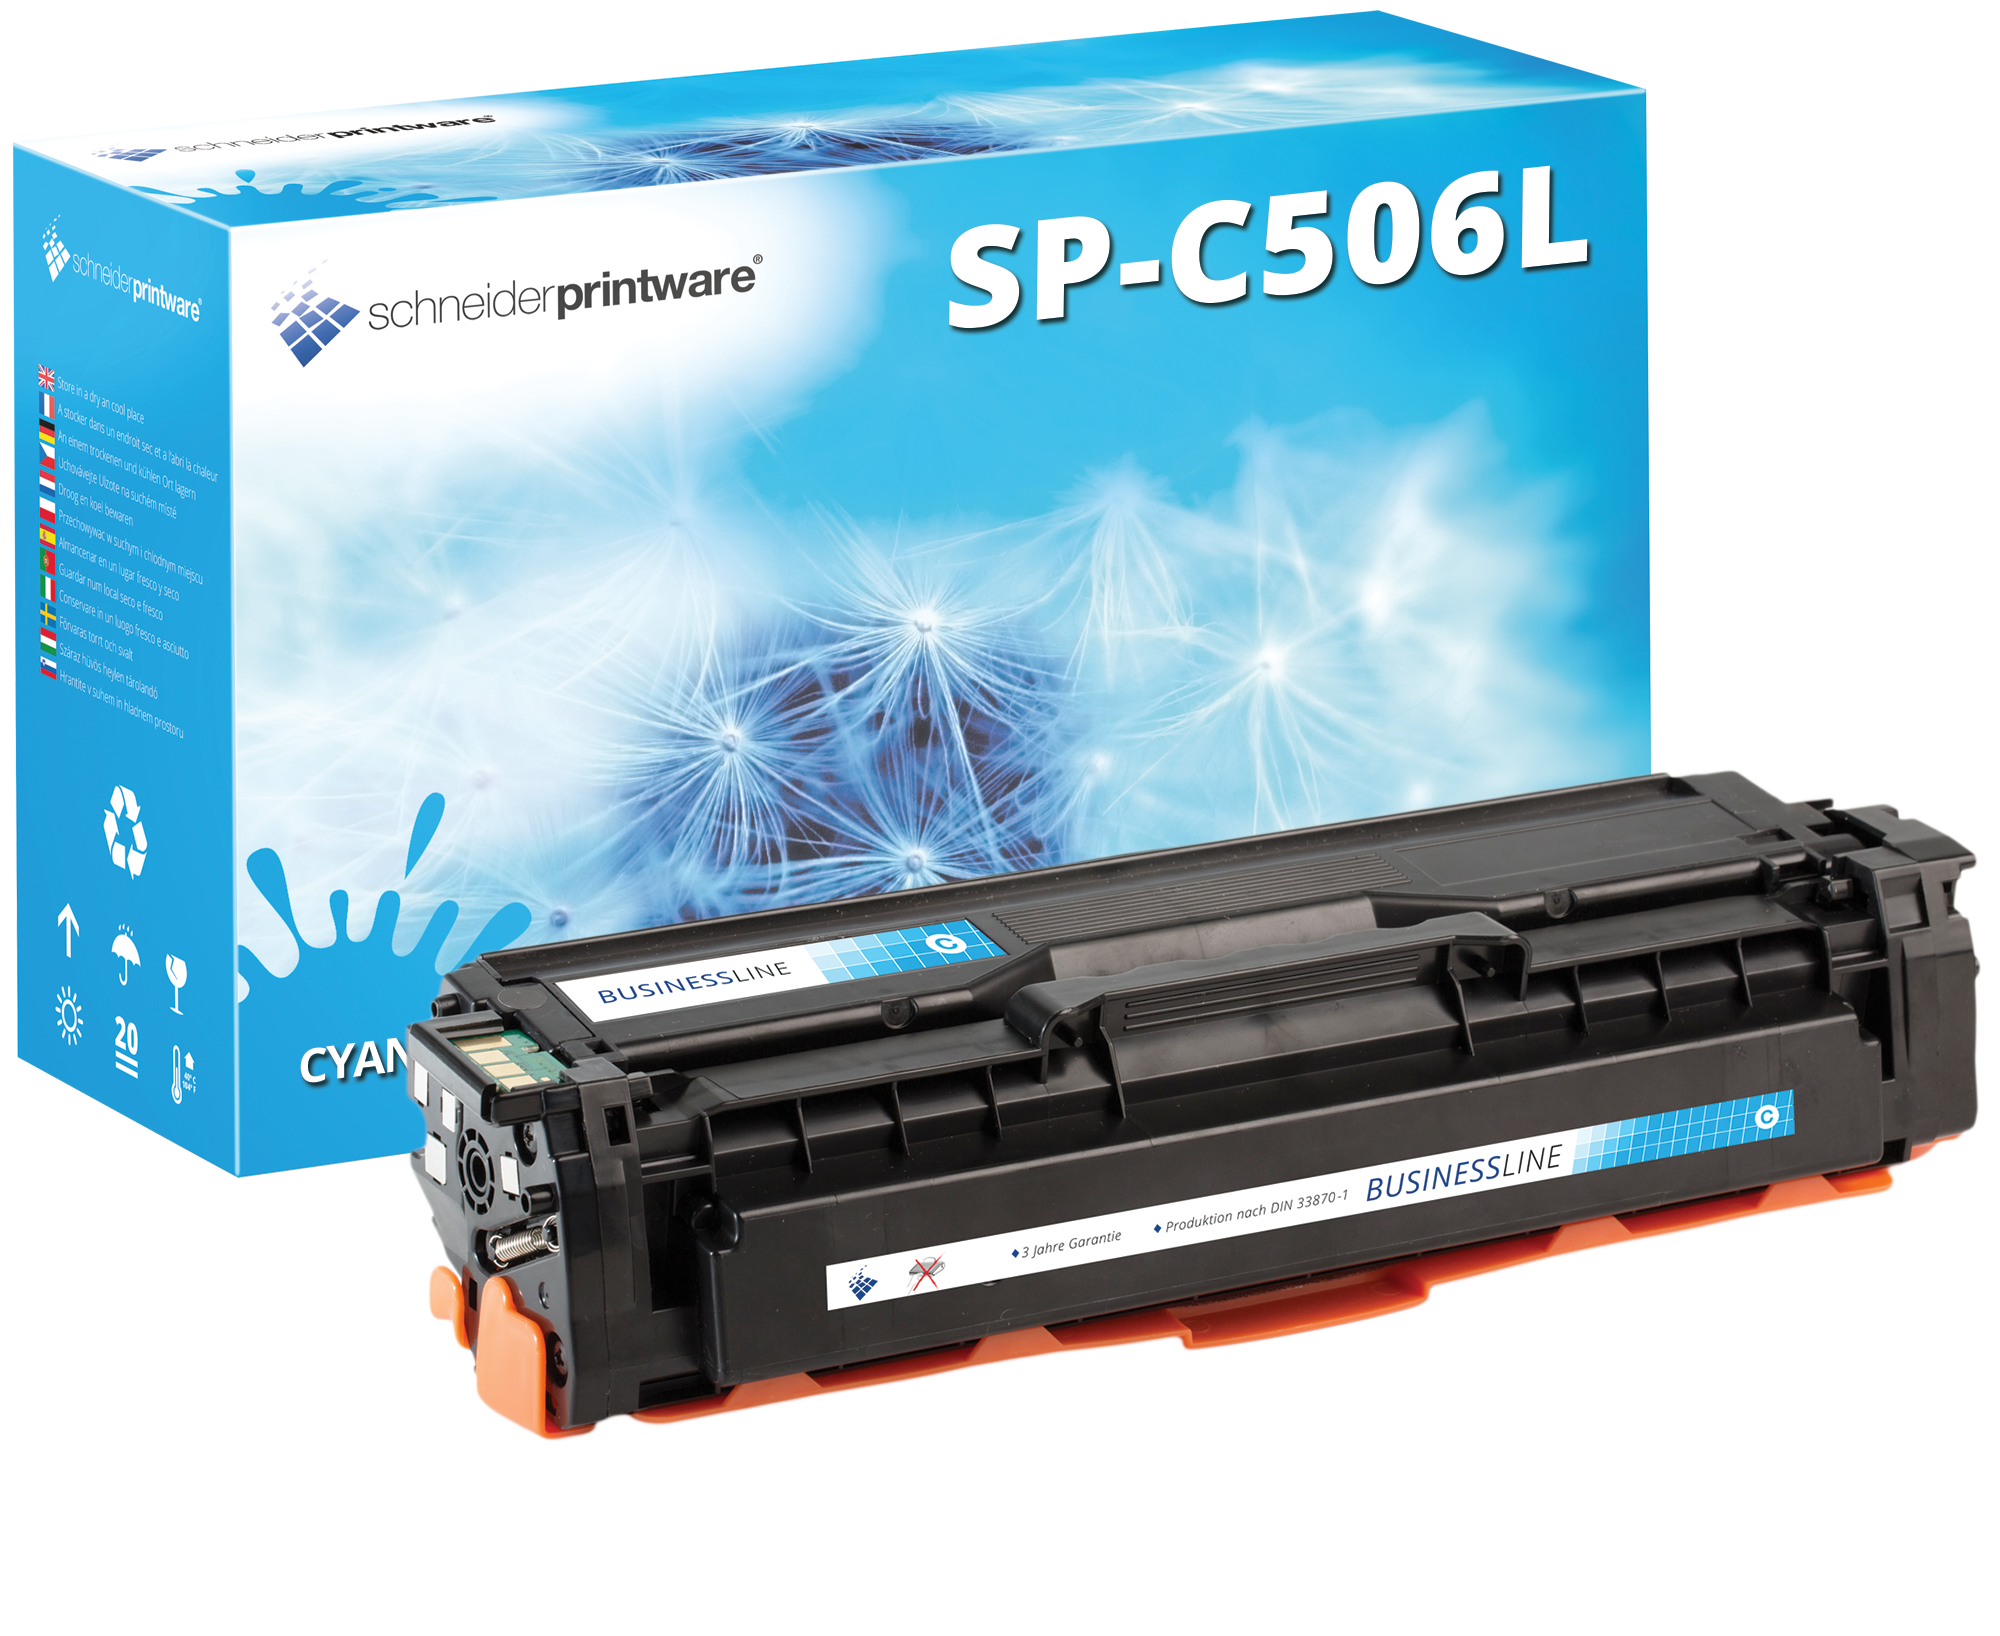 Schneider Printware Business Toner ersetzt Samsung CLT-C506L